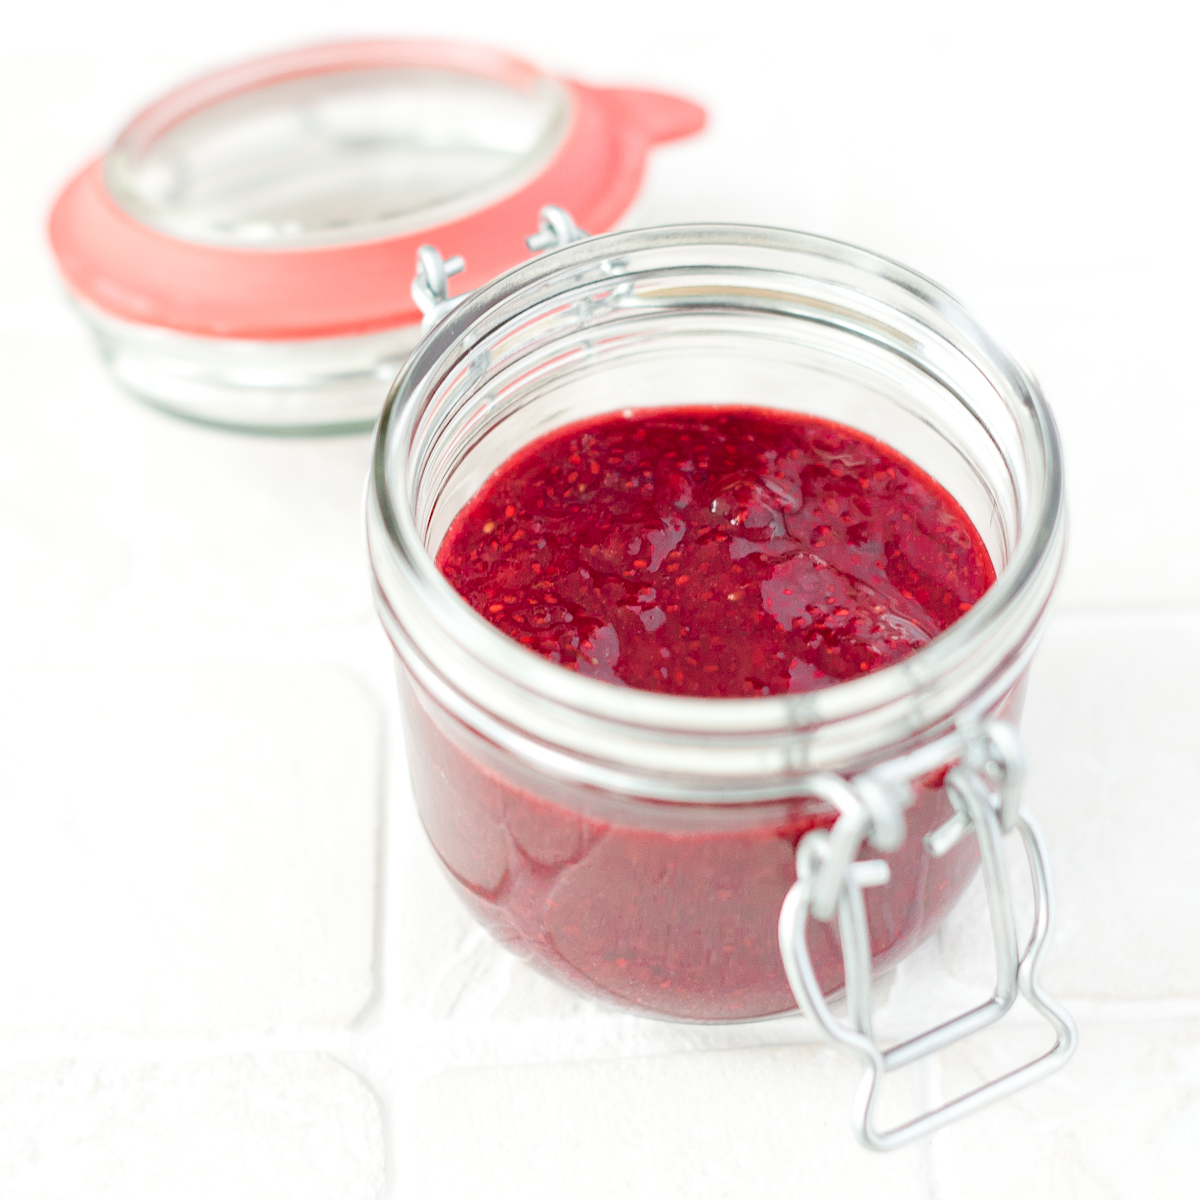 Chia jam is een gezond alternatief als broodbeleg of topping voor yoghurt, kwark en havermoutpap. Chia jam is daarnaast ook koolhydraatarm!